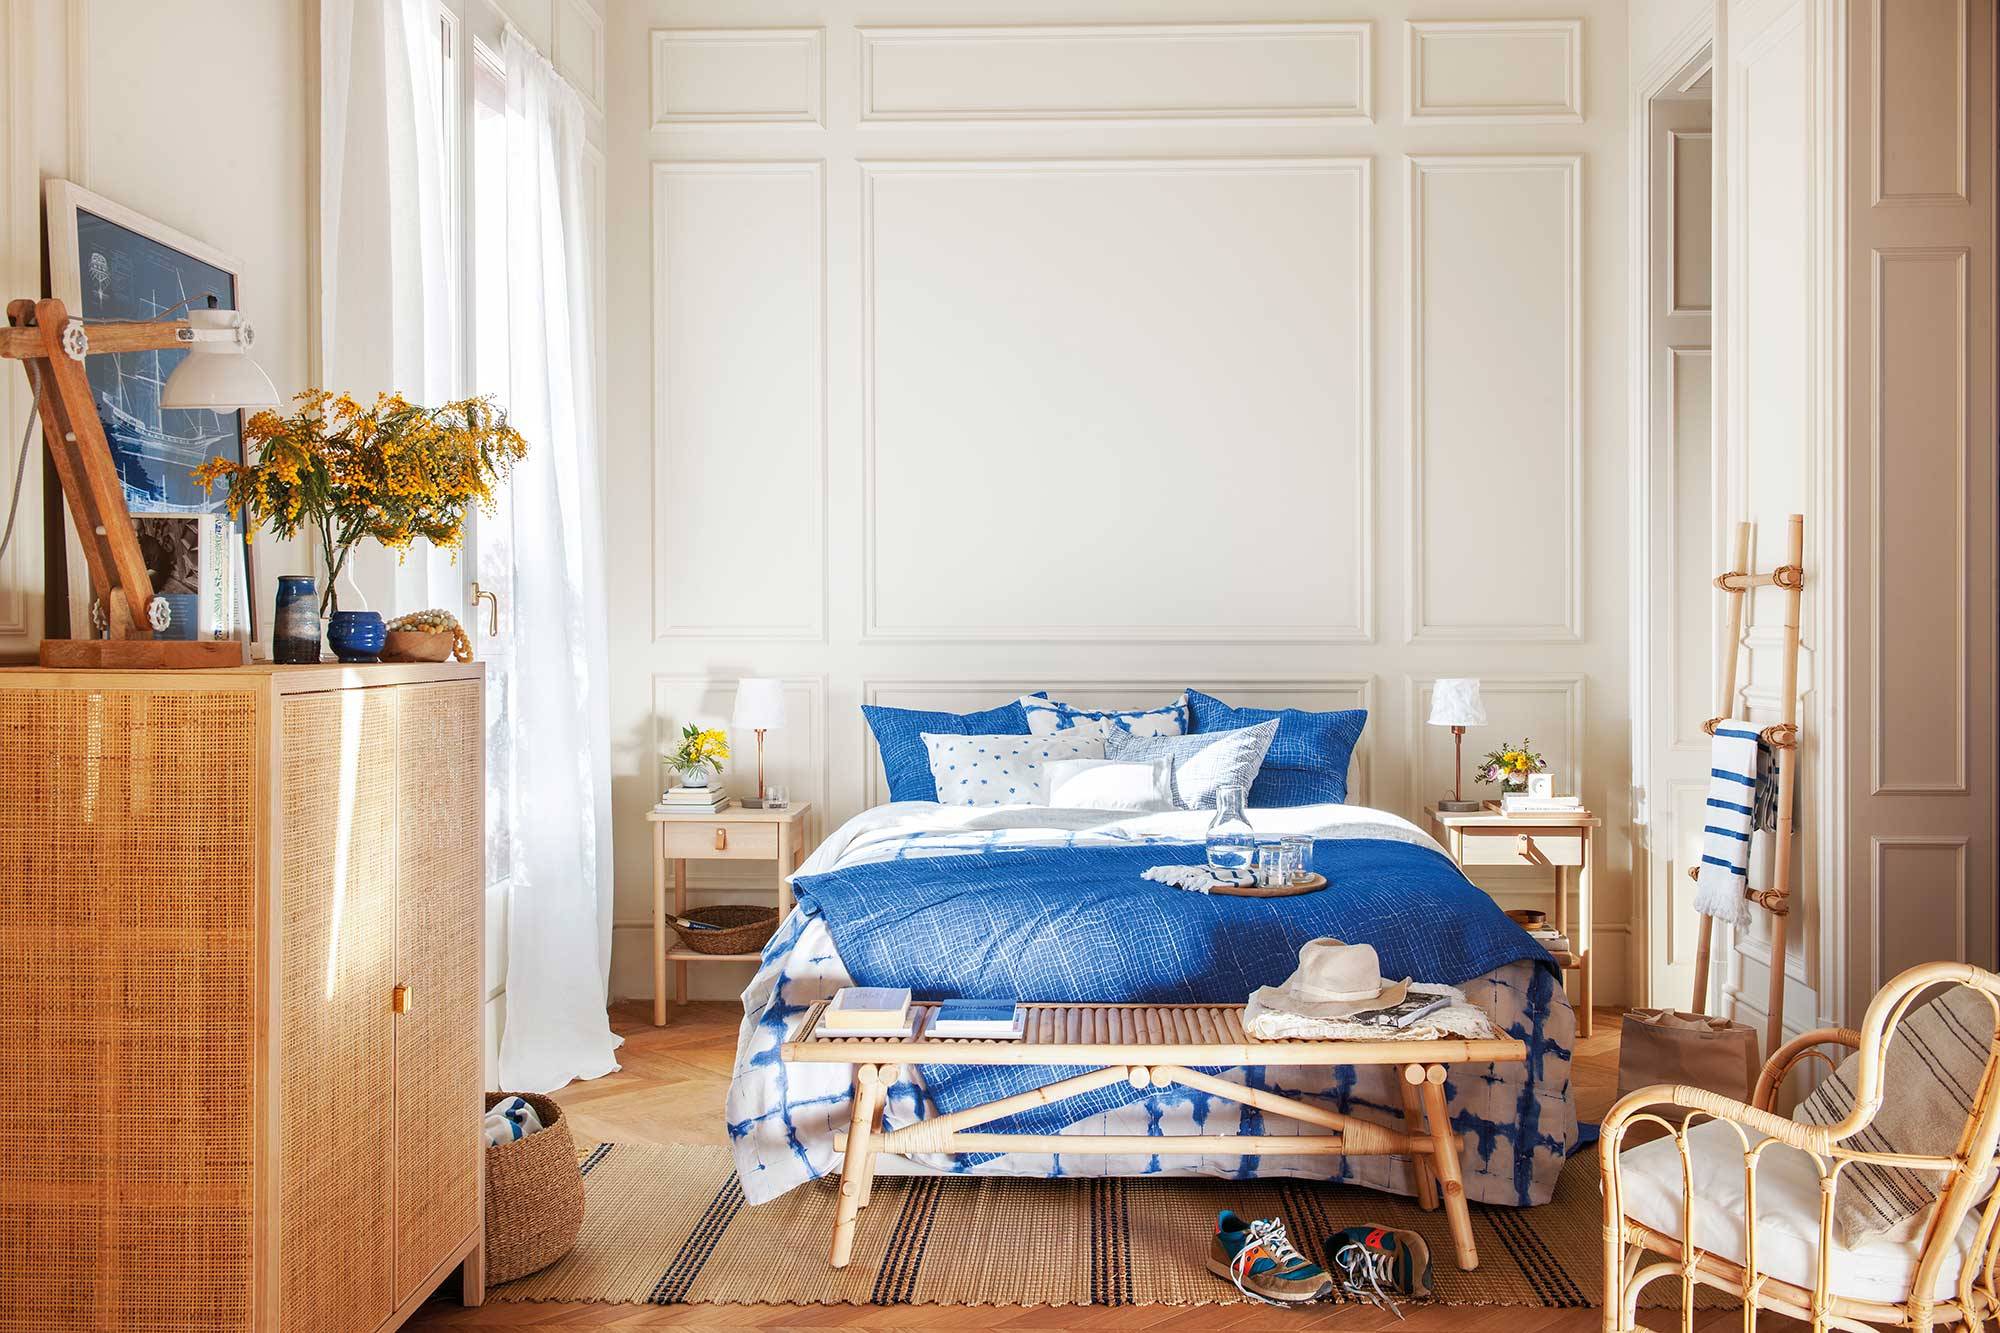 Dormitorio en finca regia con molduras y ropa de cama en azul 00501536